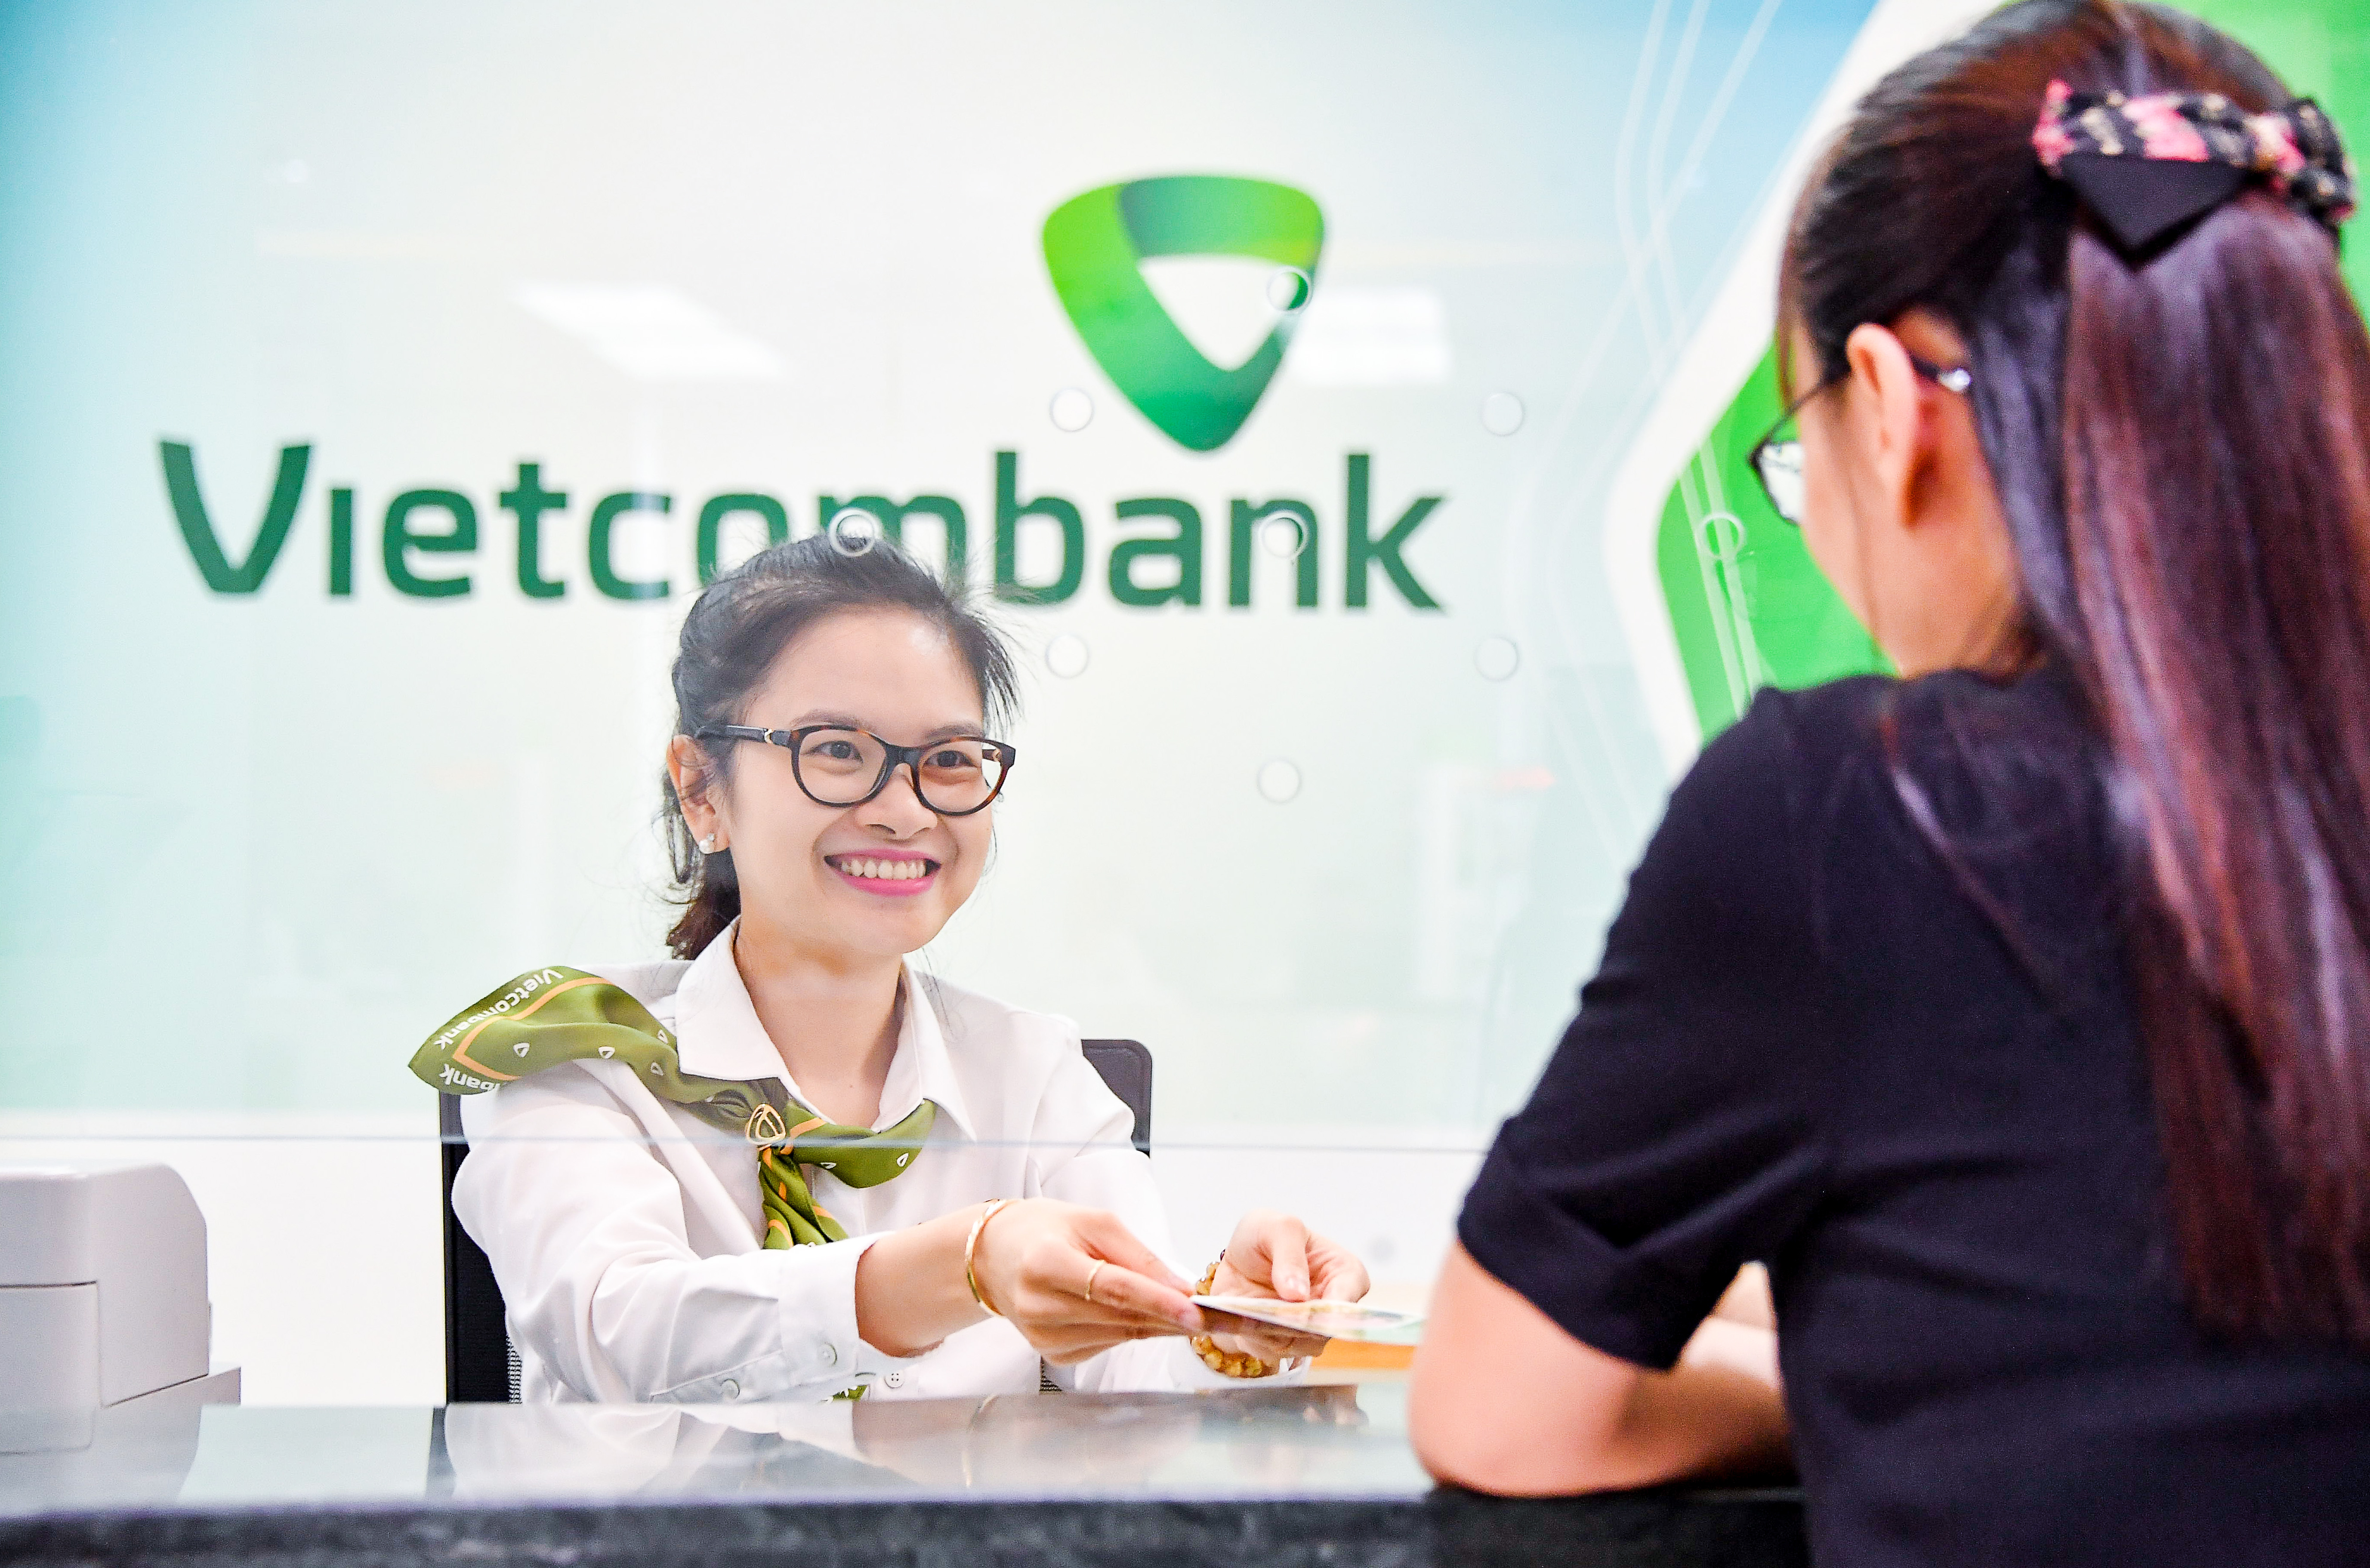 Bộ chữ thương hiệu Vietcombank